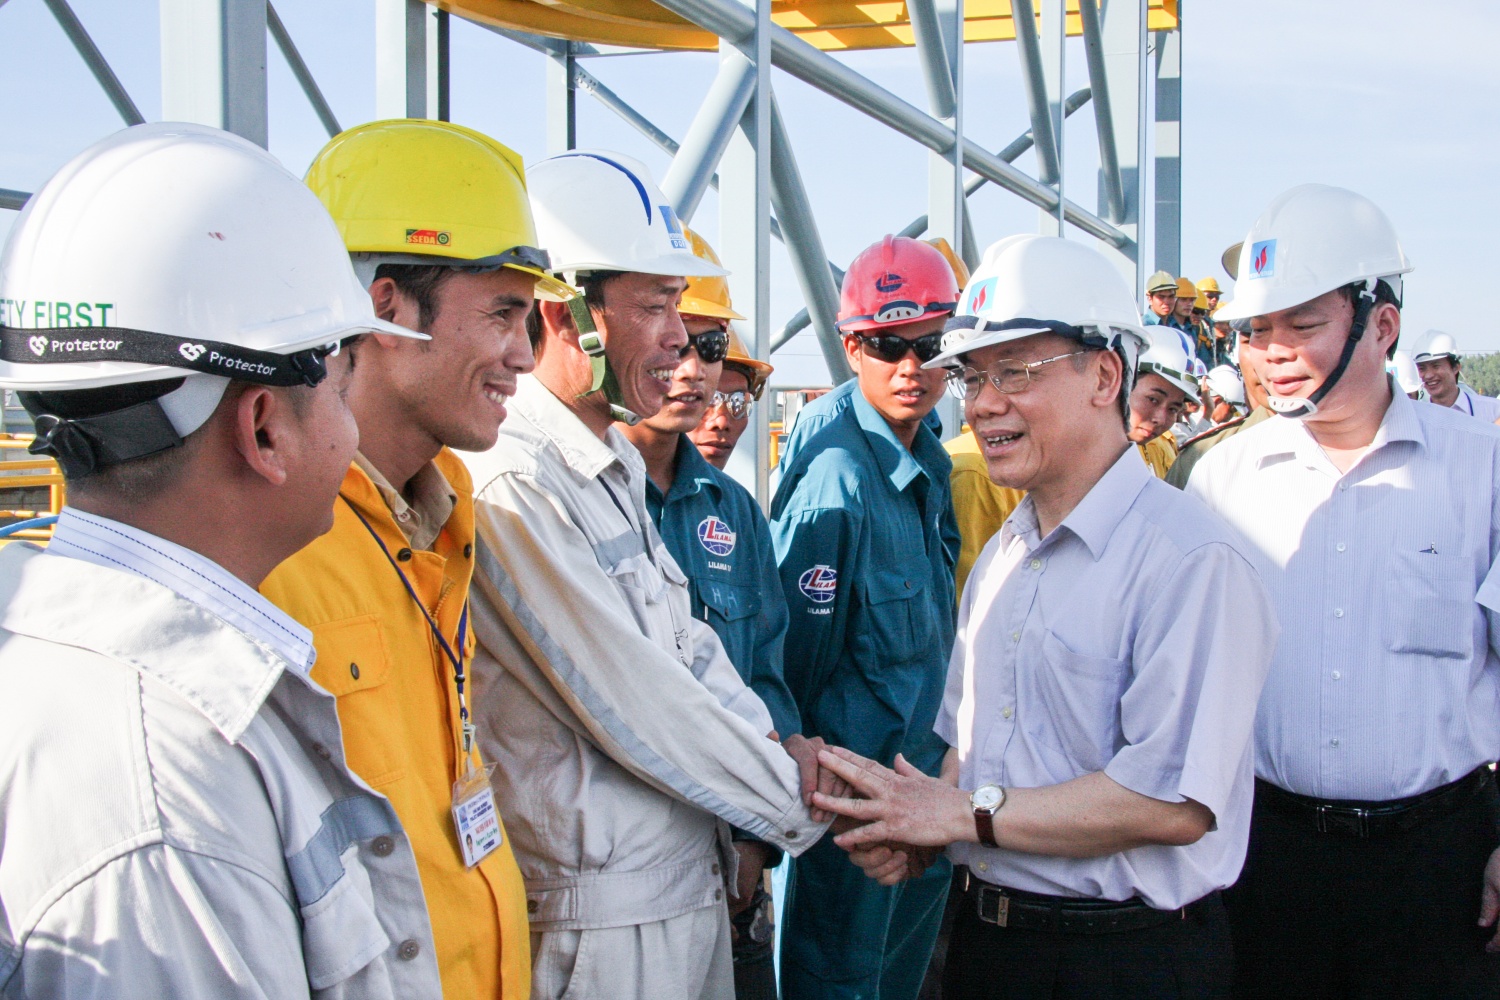 Đồng chí Tổng Bí thư luôn động viên, tin tưởng sự phát triển của Tập đoàn Dầu khí Việt Nam và đội ngũ người lao động Dầu khí”